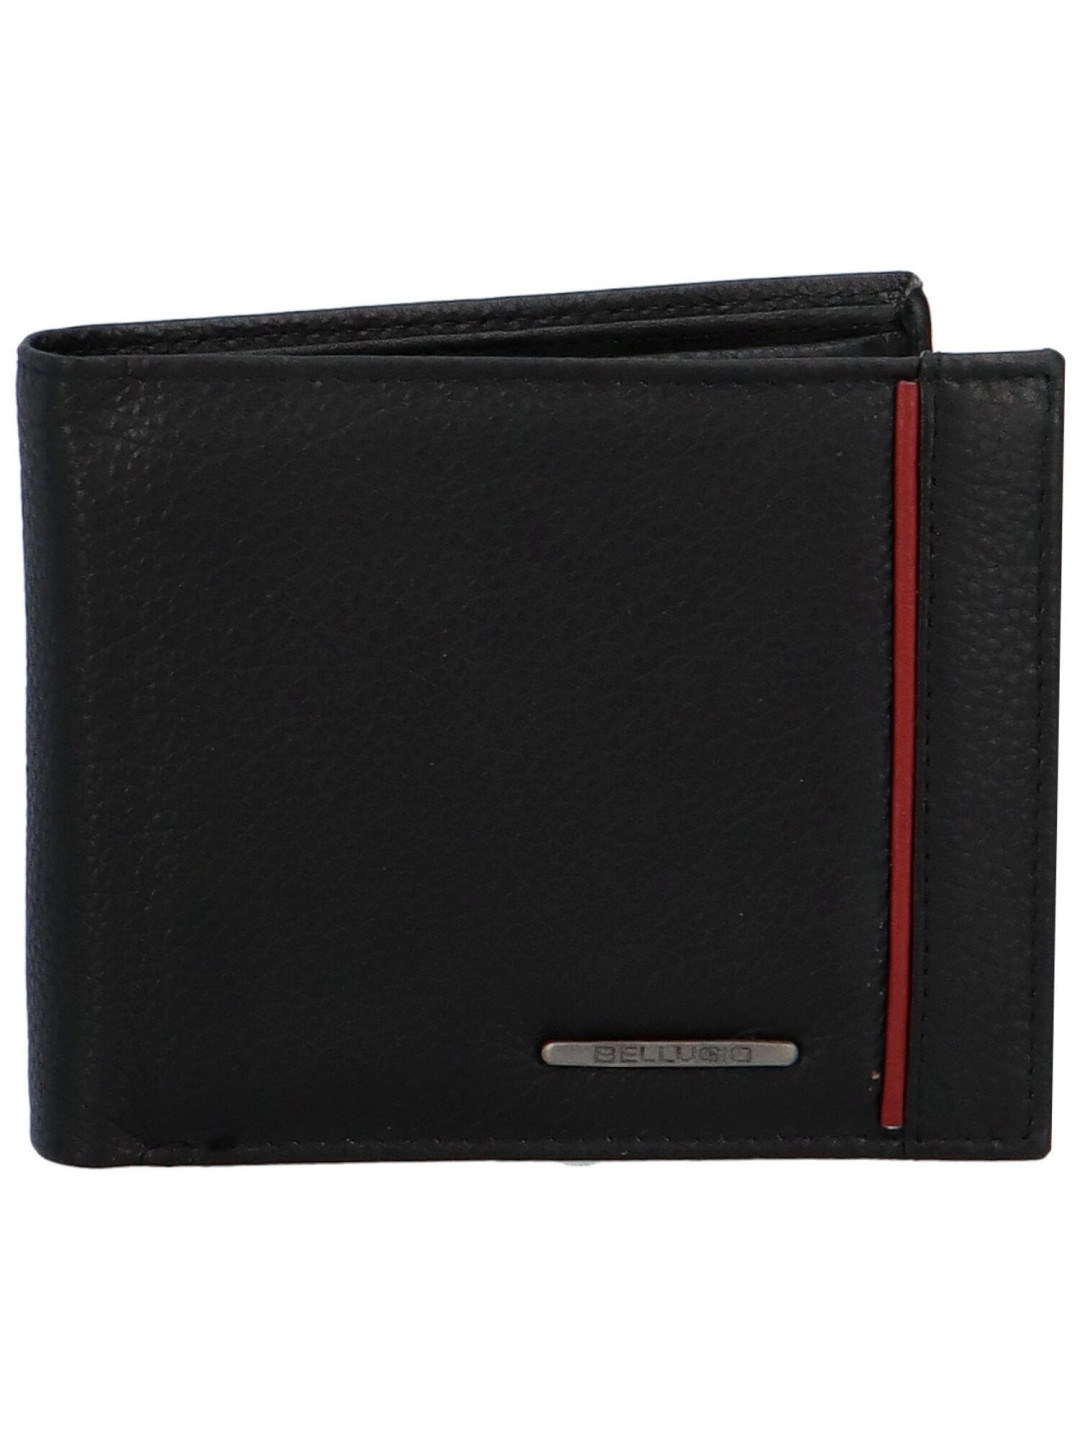 Luxusní pánská kožená peněženka Rivo černá